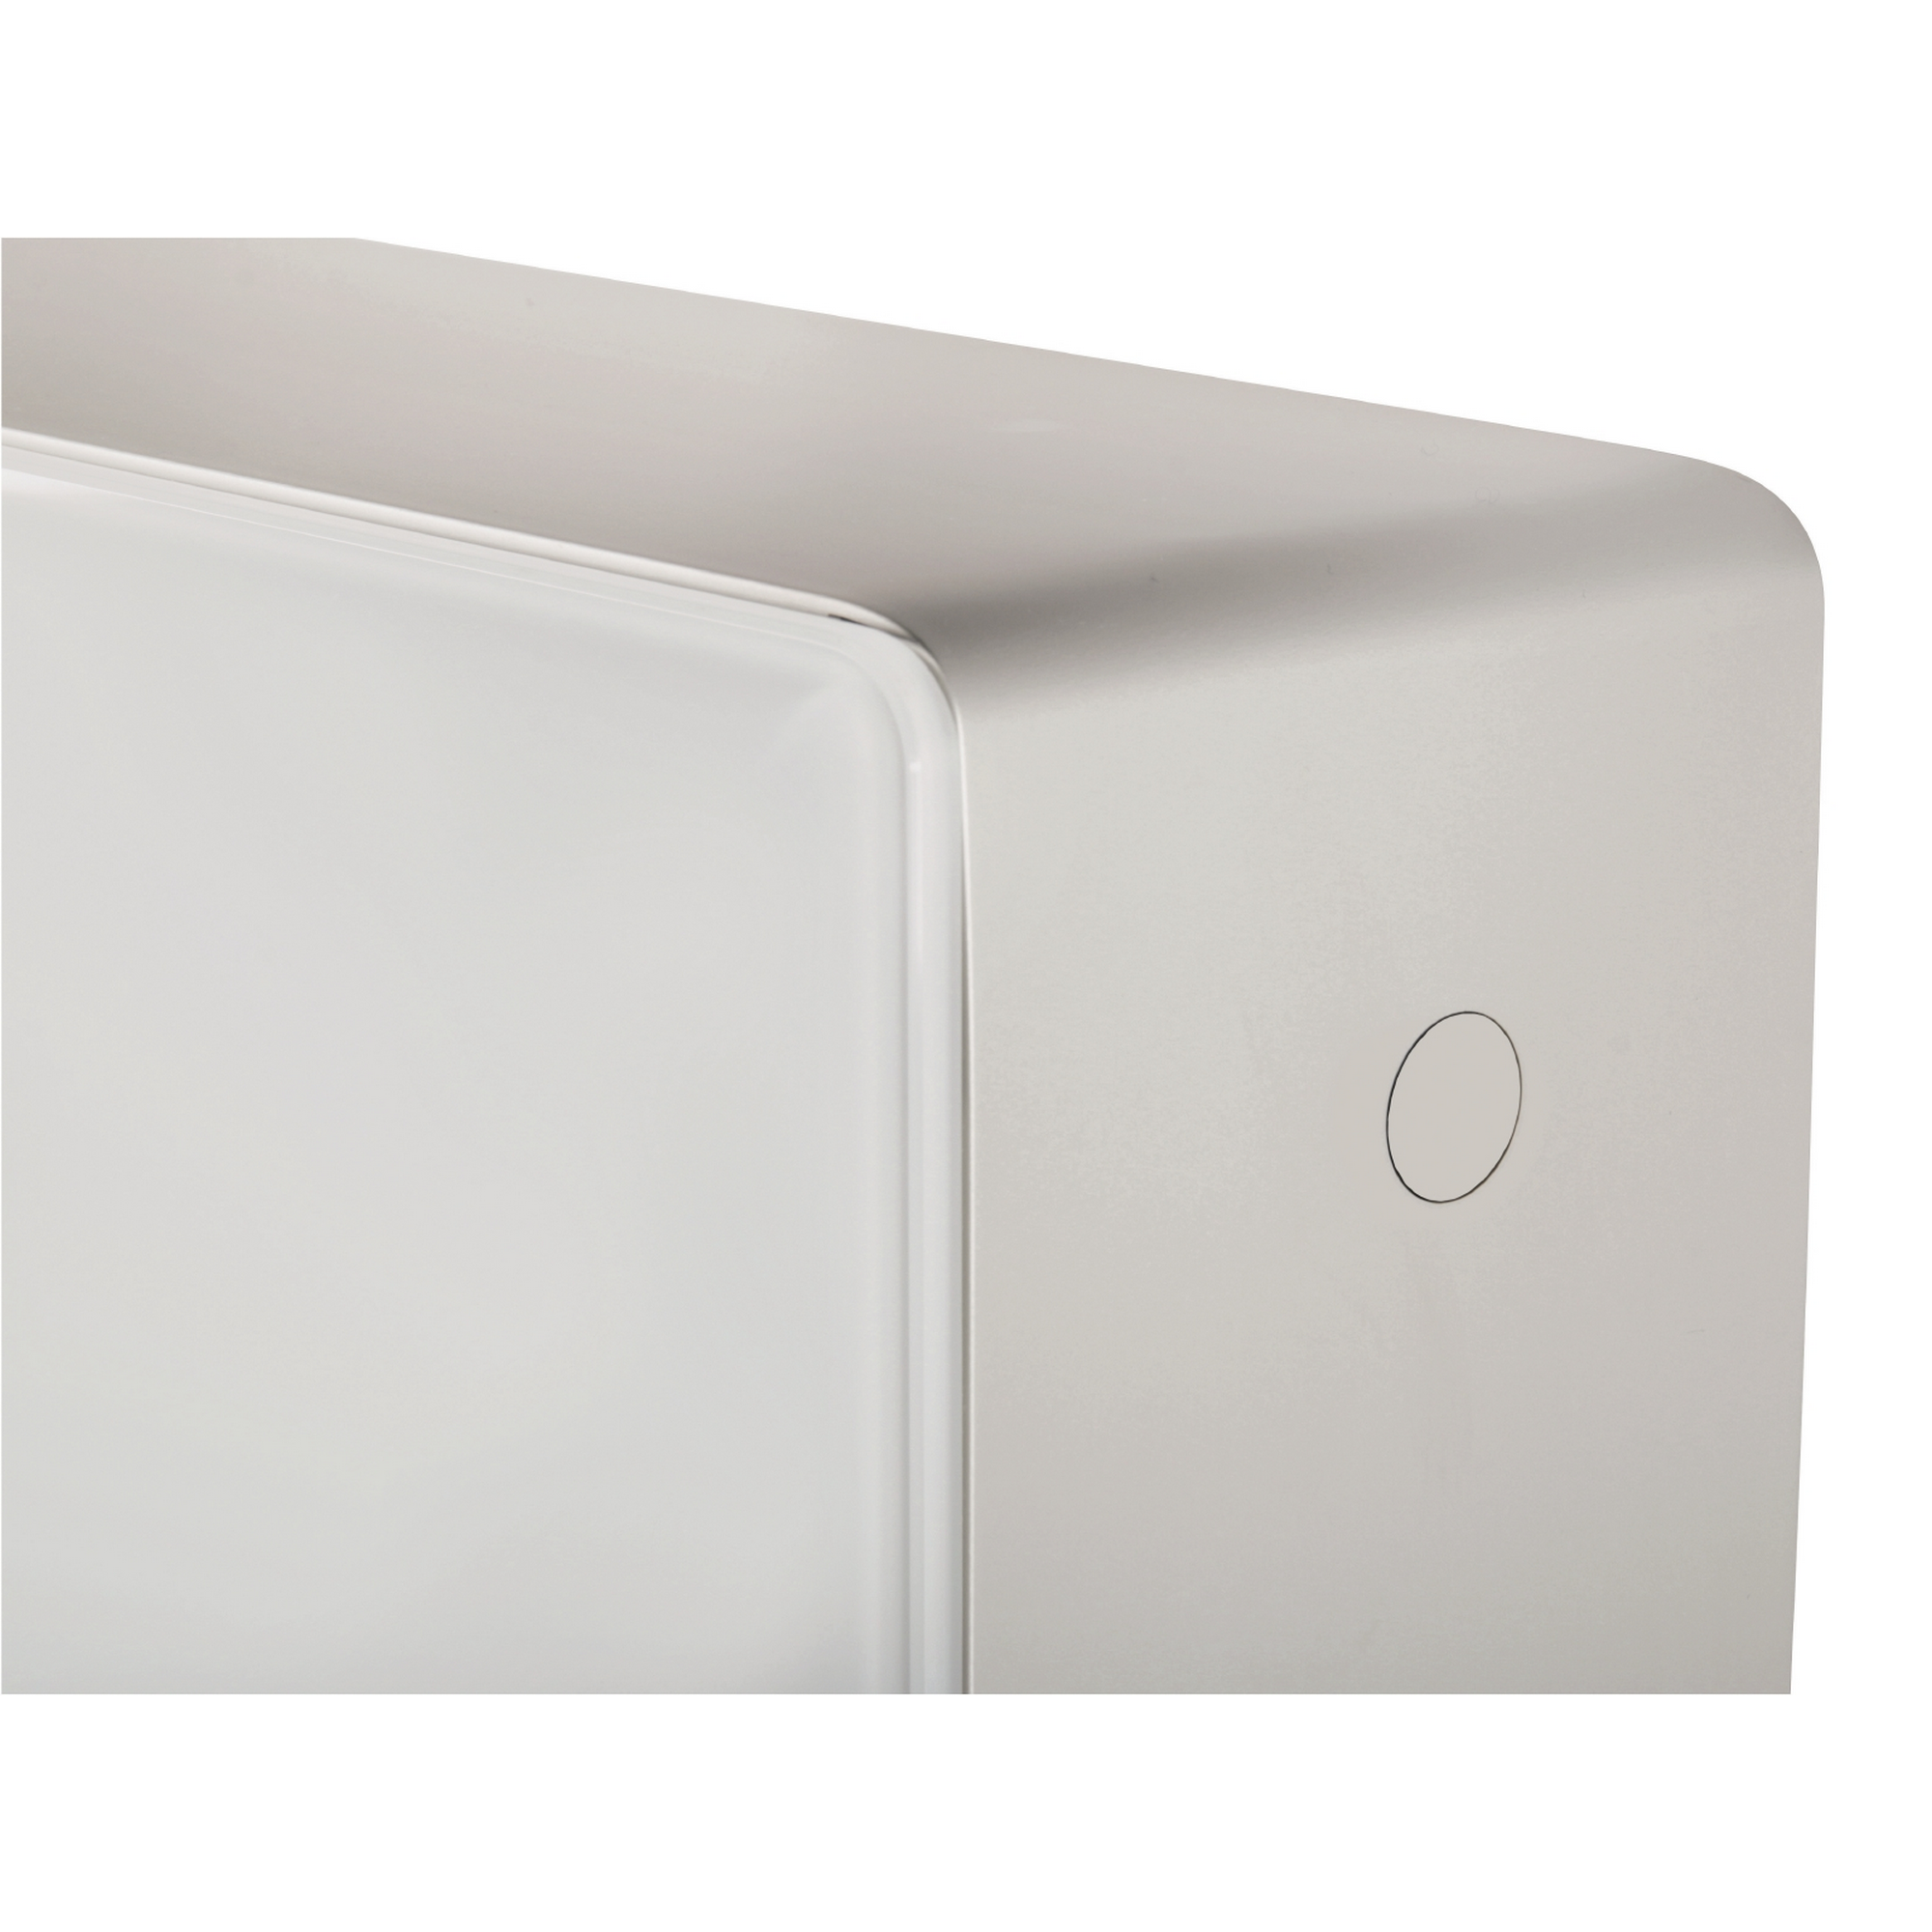 Sanitärmodul für Wand-WC weiß, mit Spülkasten + product picture